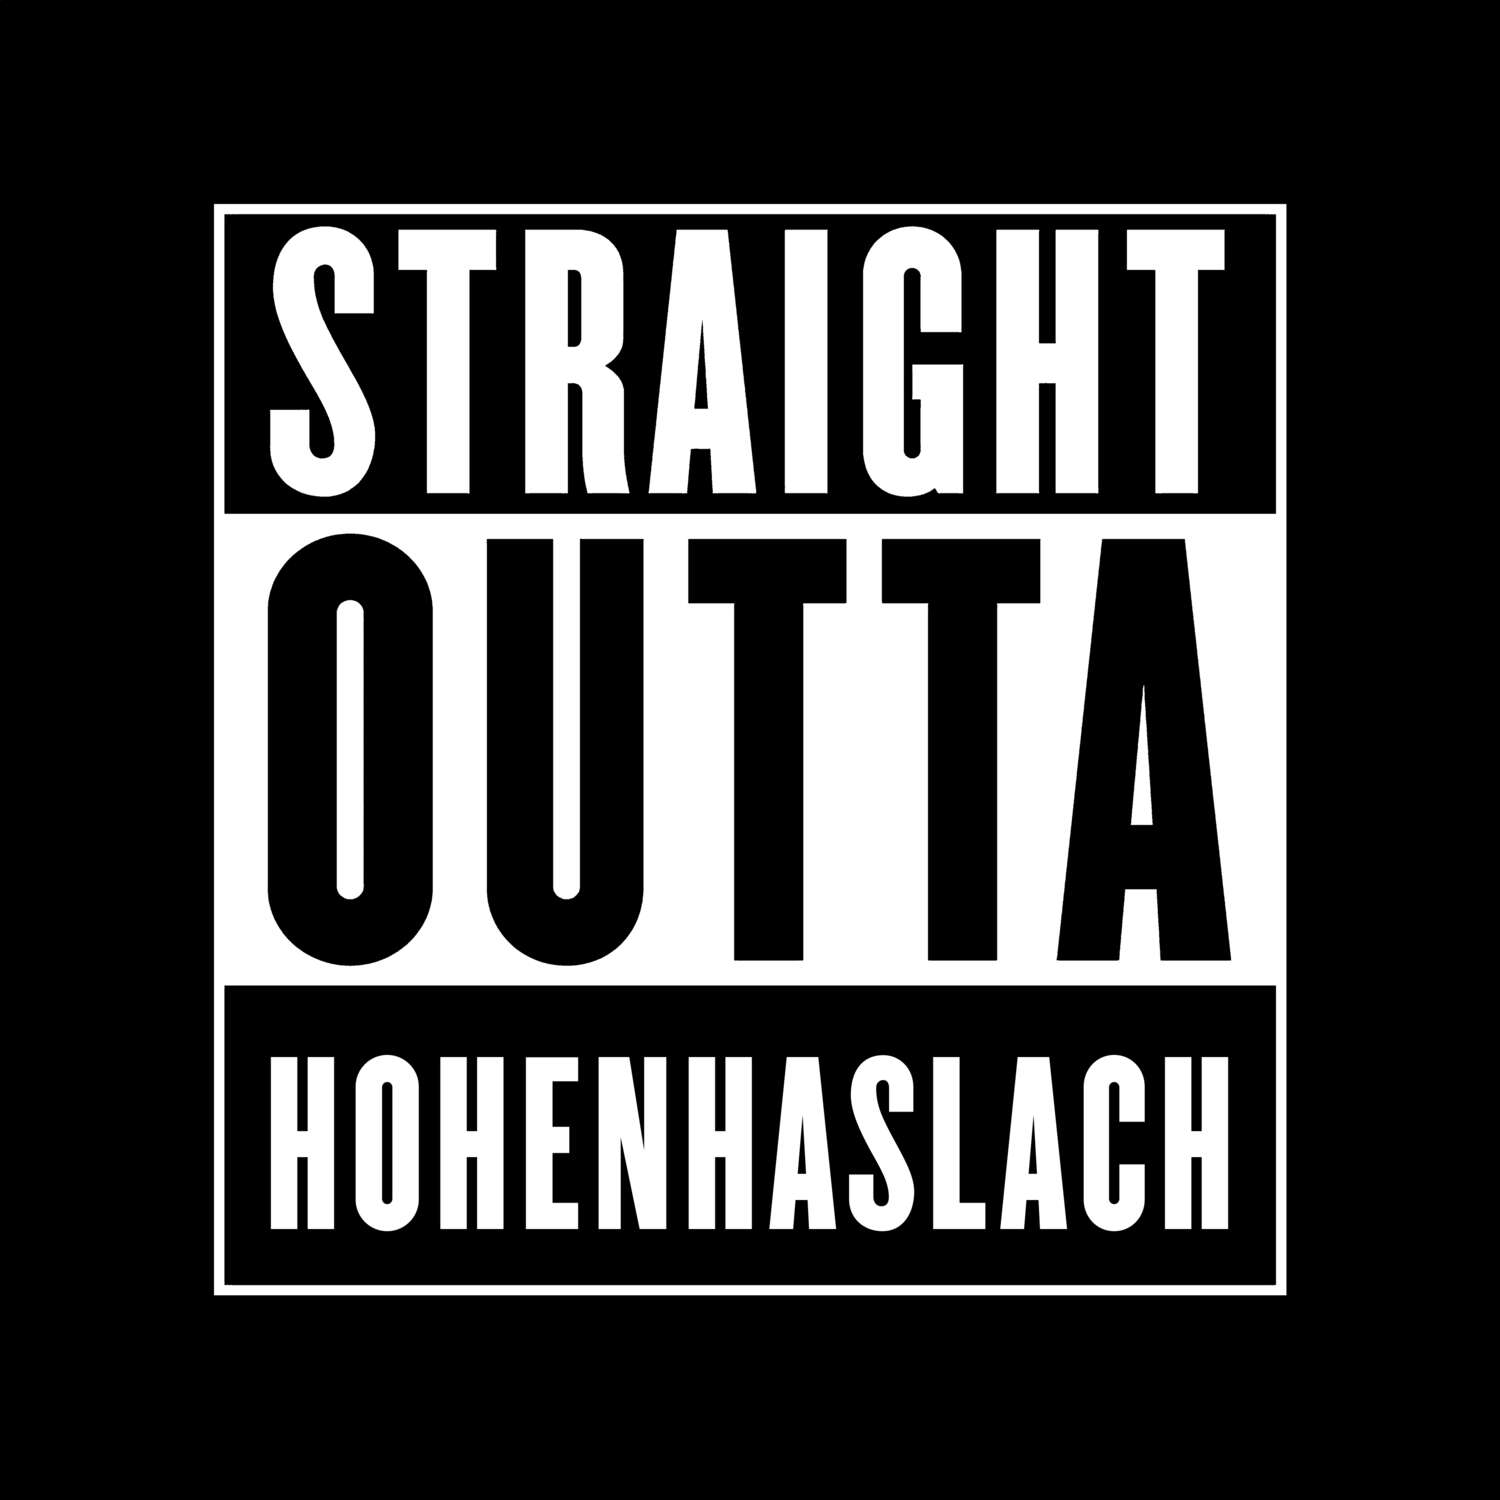 Hohenhaslach T-Shirt »Straight Outta«